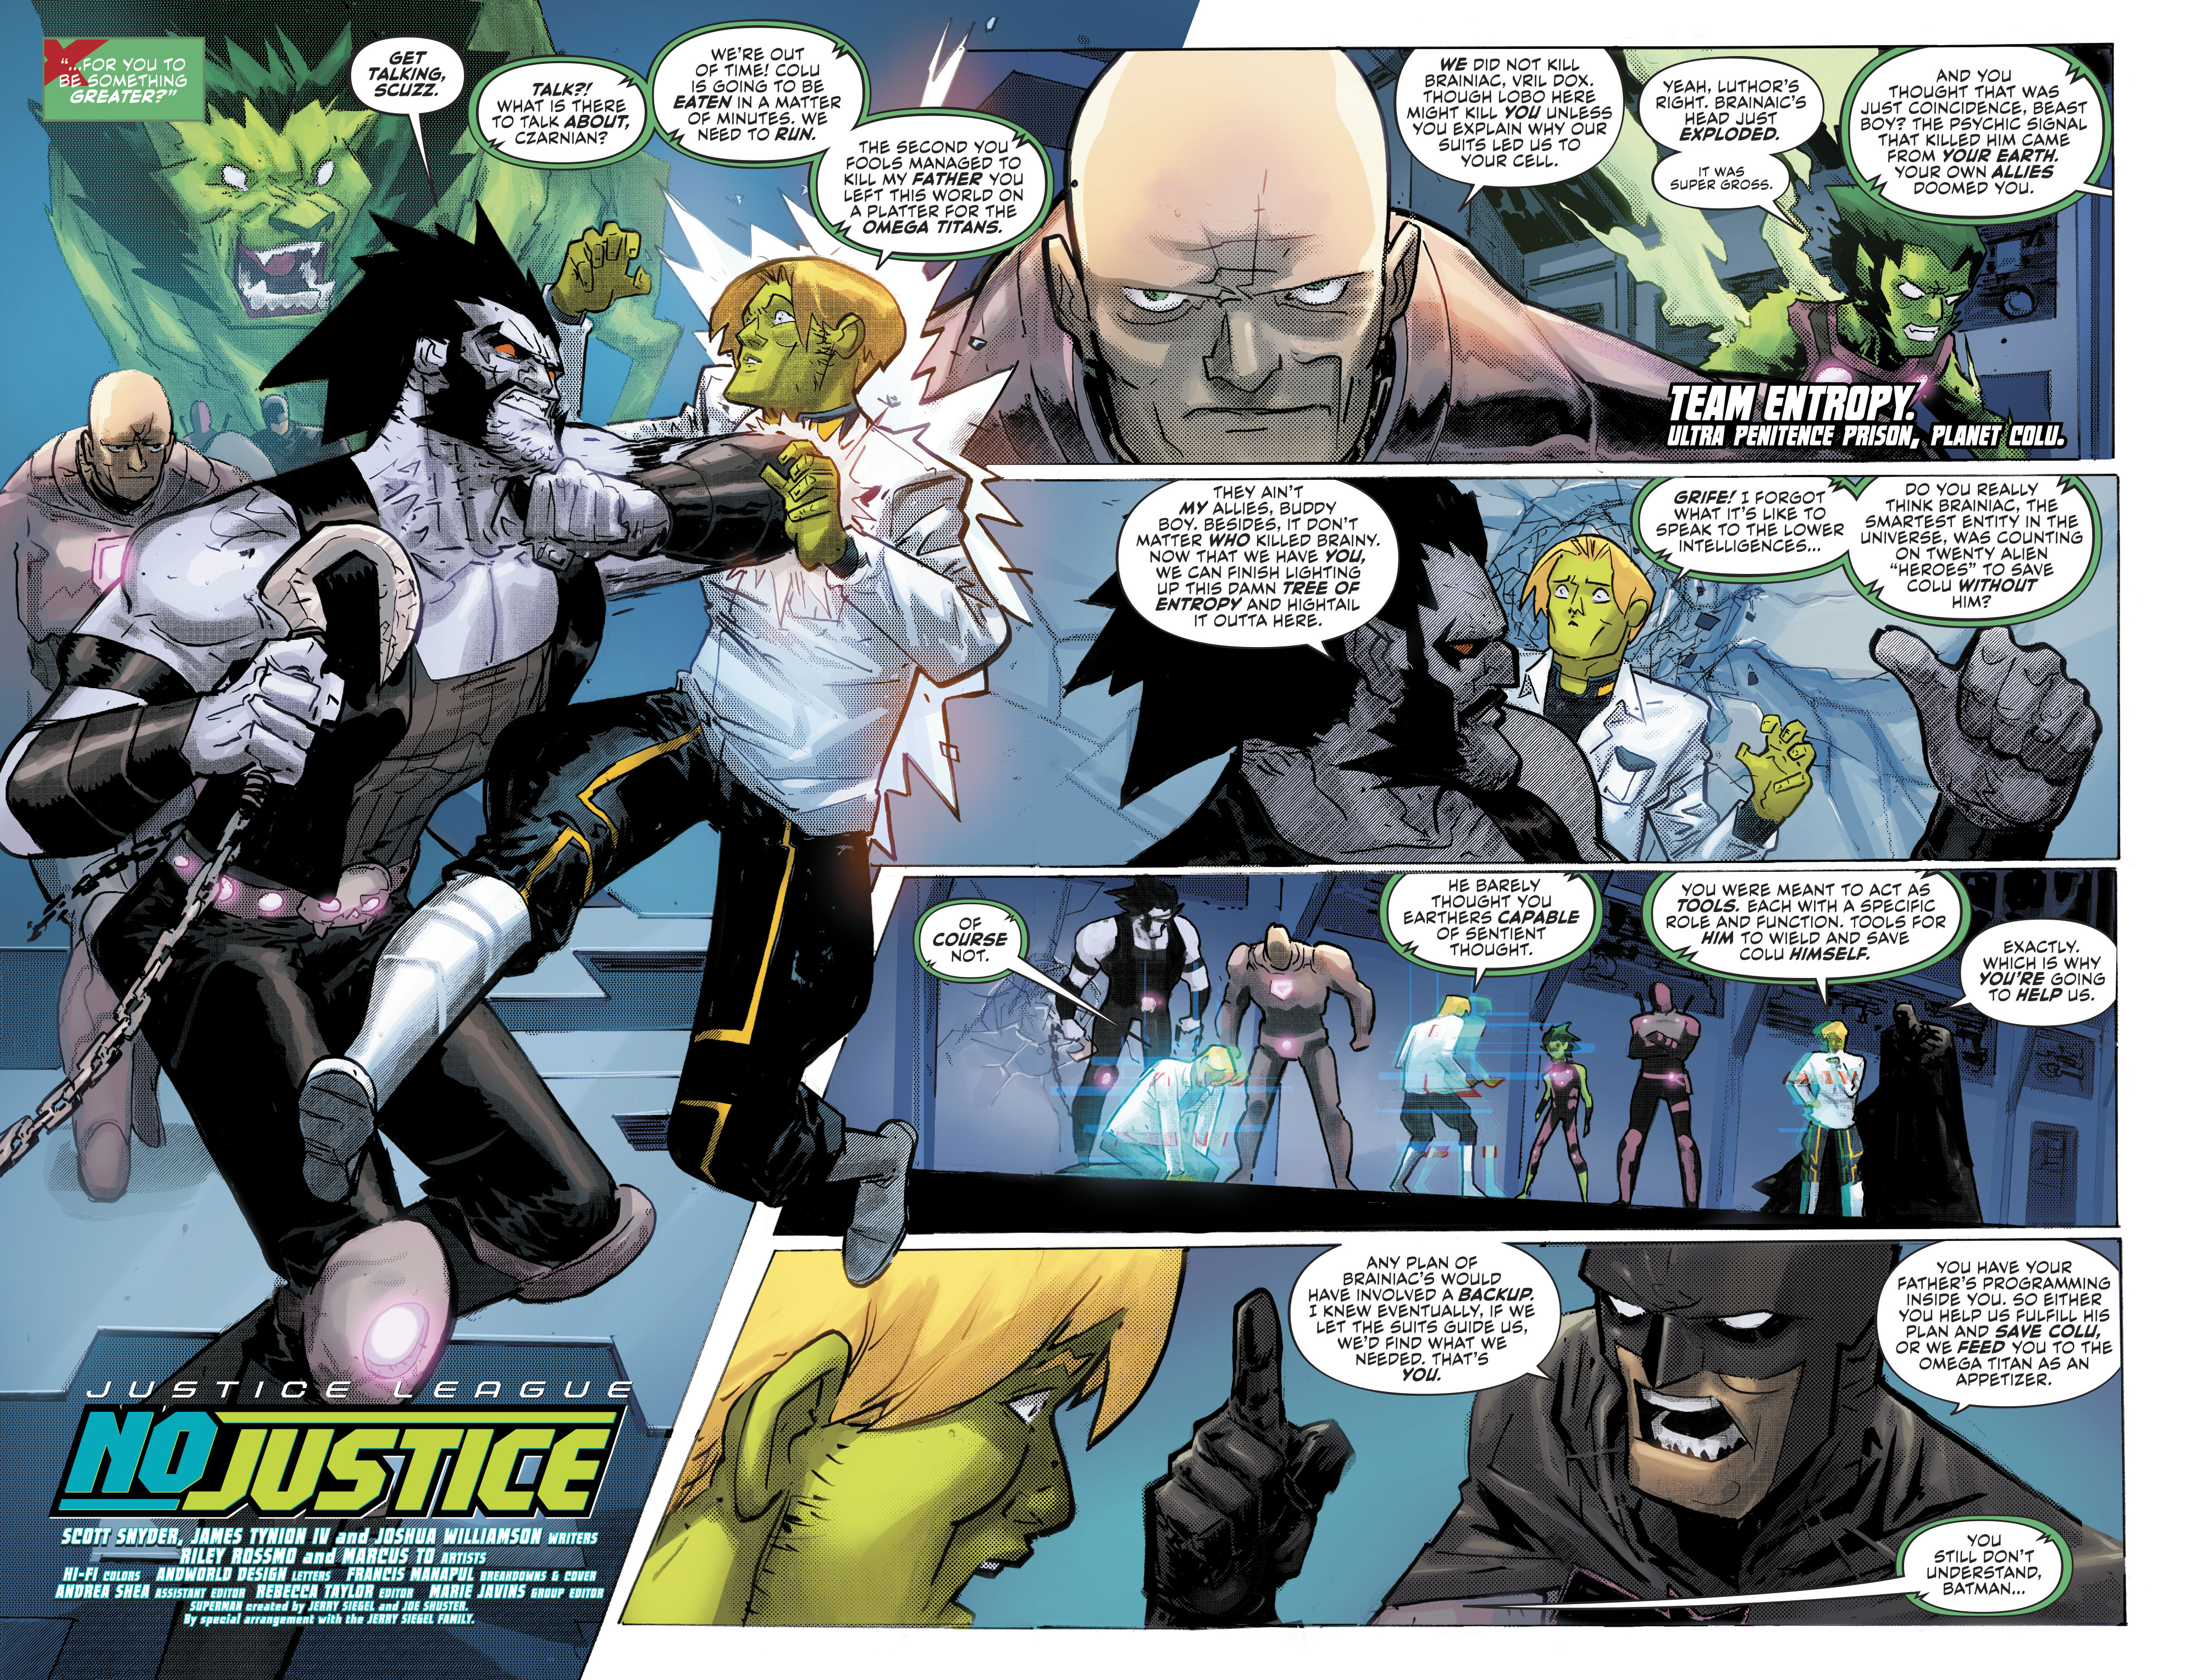 Justice League No Justice 2018 003 004